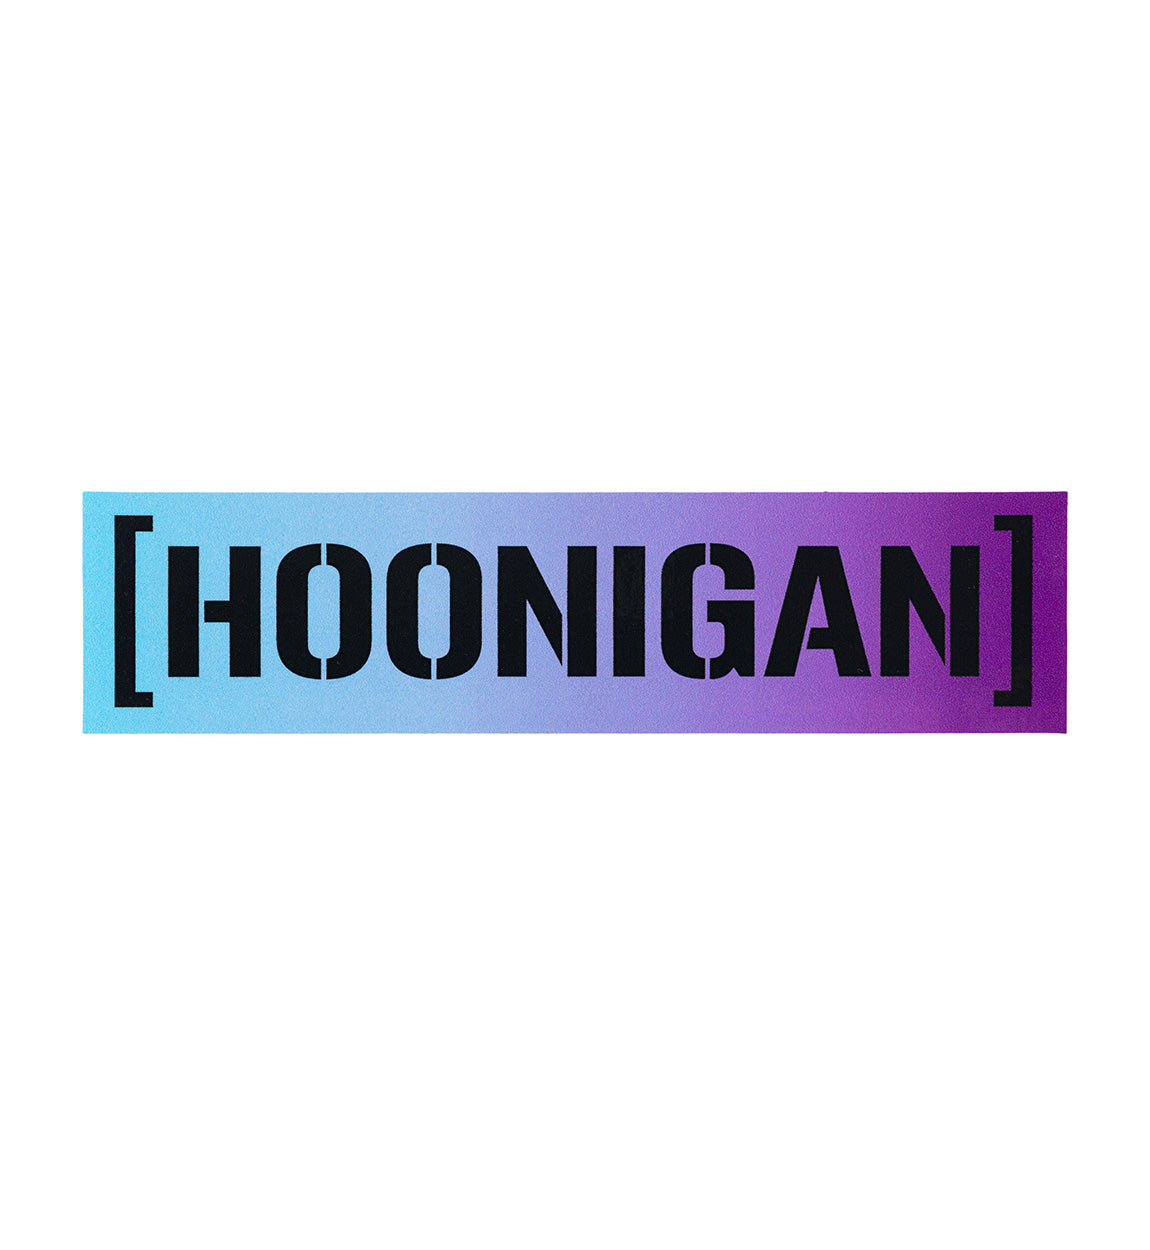 Hoonigan SHIFT CENSOR BAR Sticker (8")